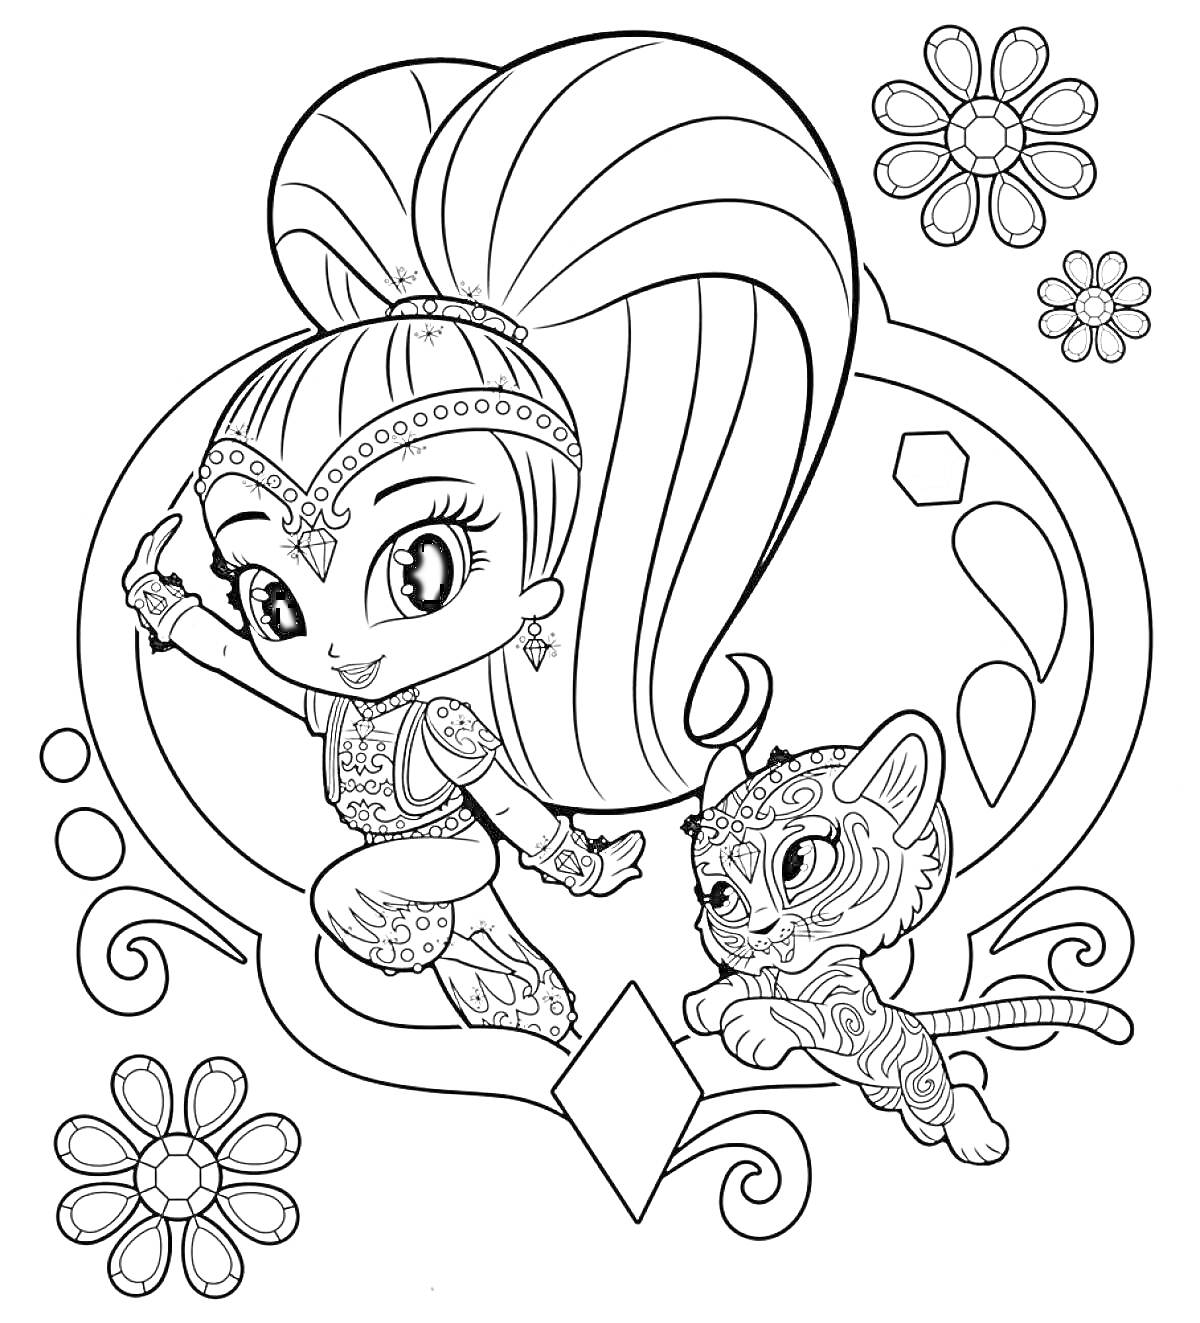 Раскраска Девочка с хвостом и тигрёнком, в рамке с цветами и ромбами